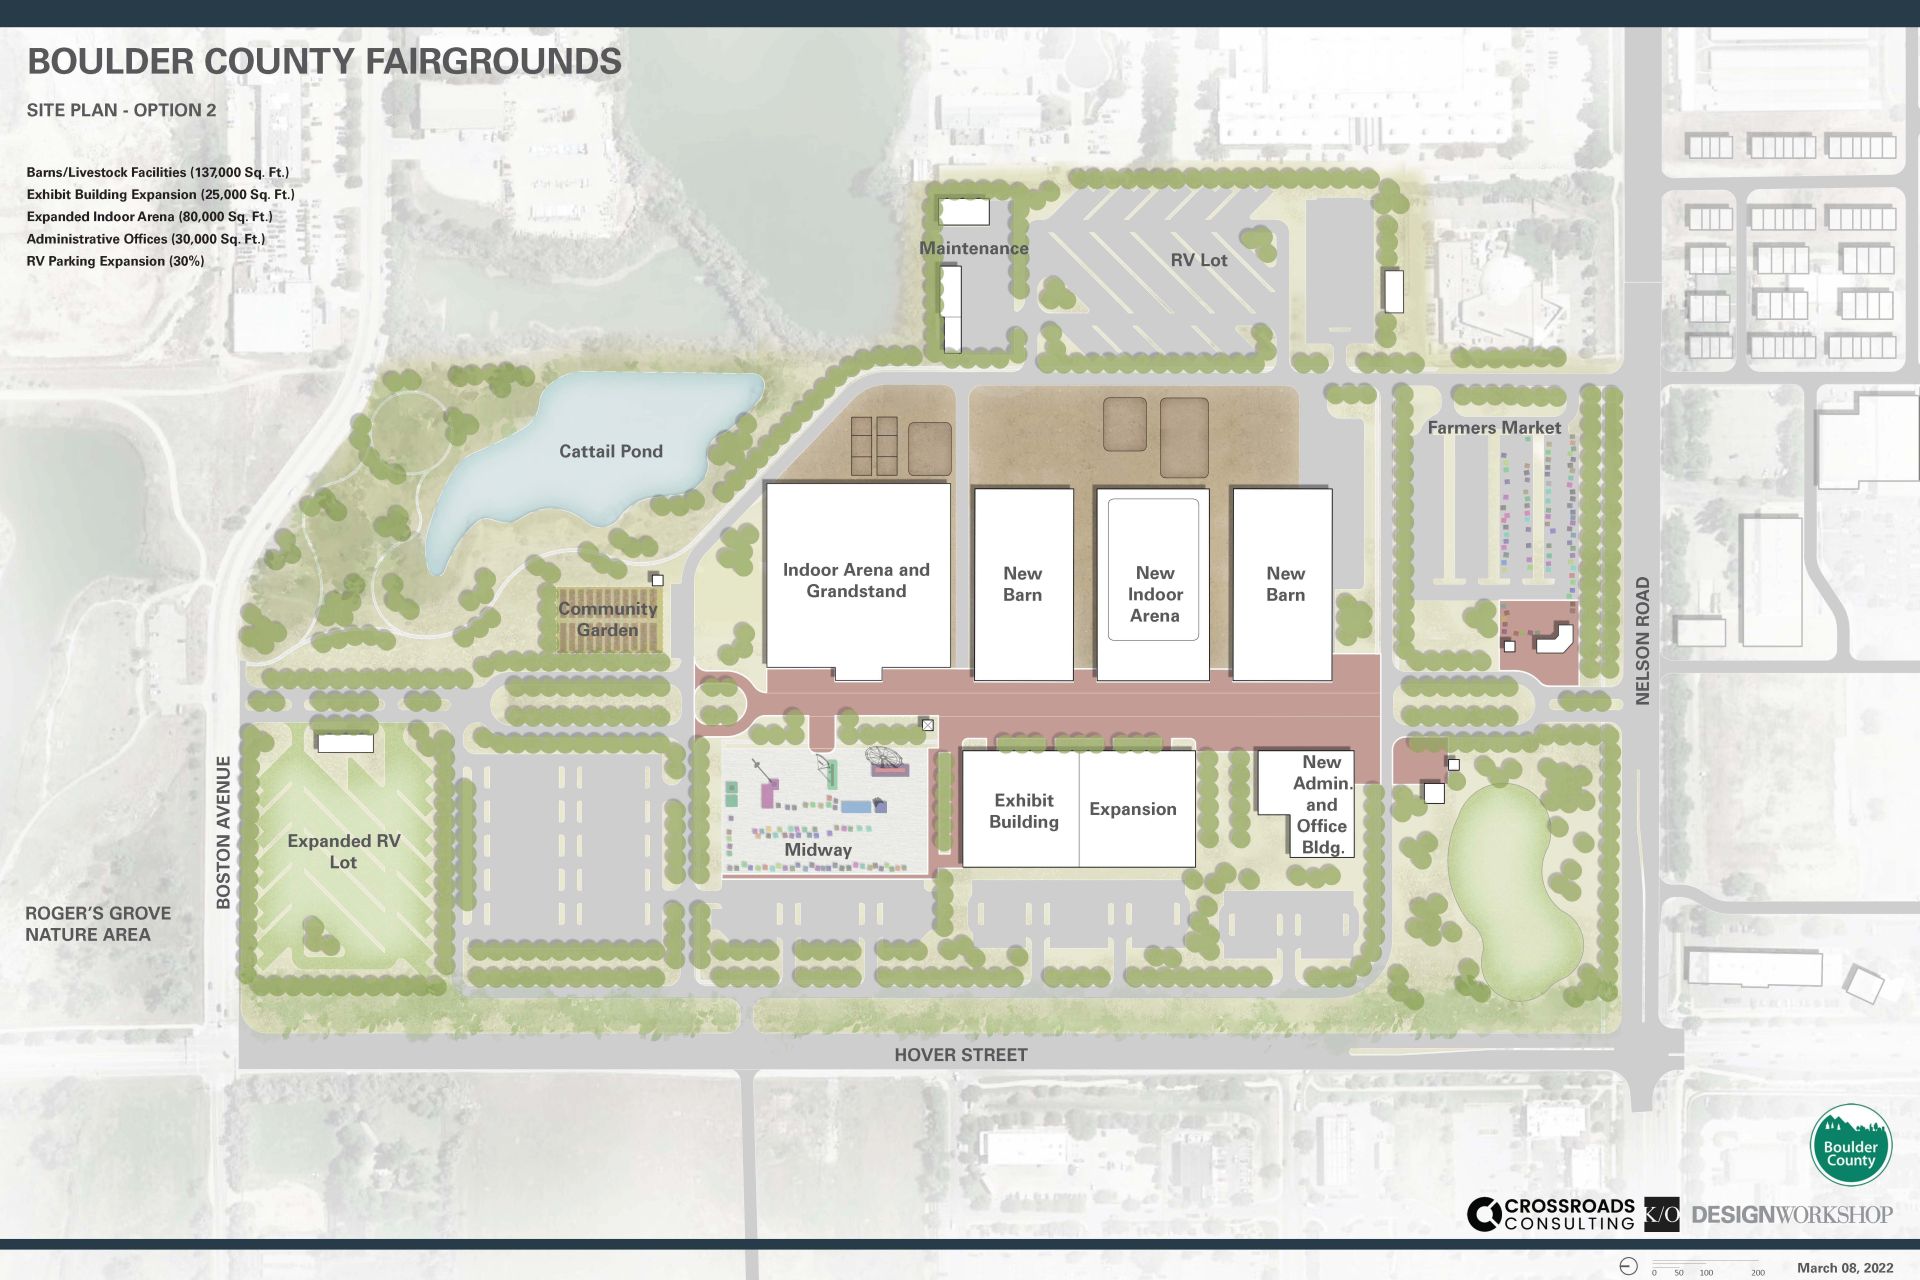 Fairgrounds Conceptual Site Plan: Option 2